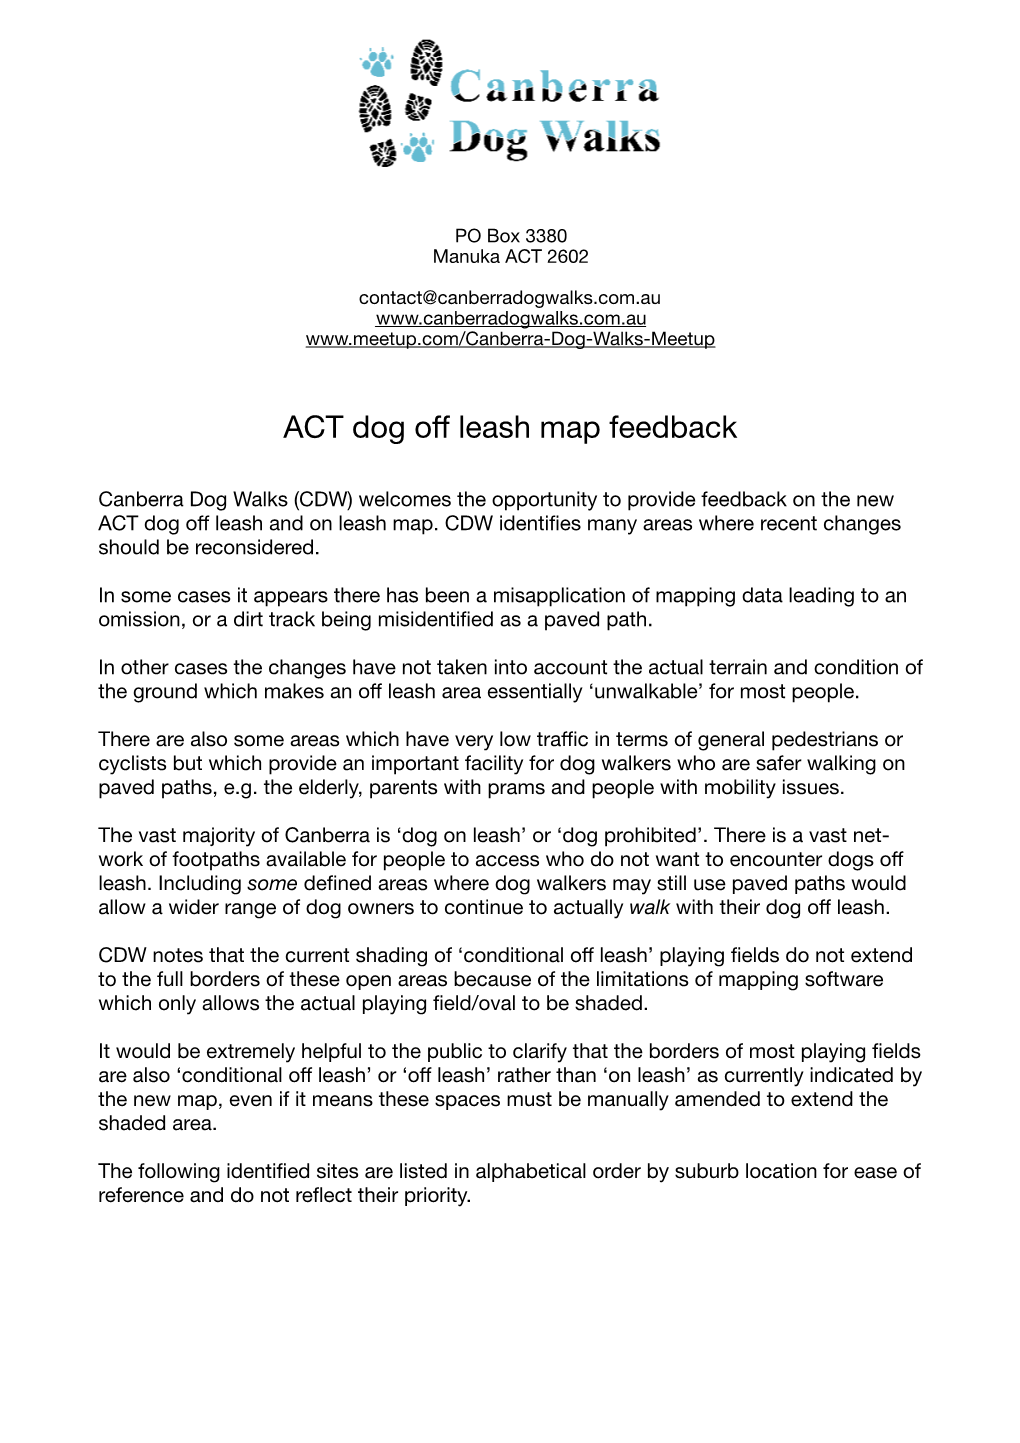 ACT Dog Offleash Map Feedback